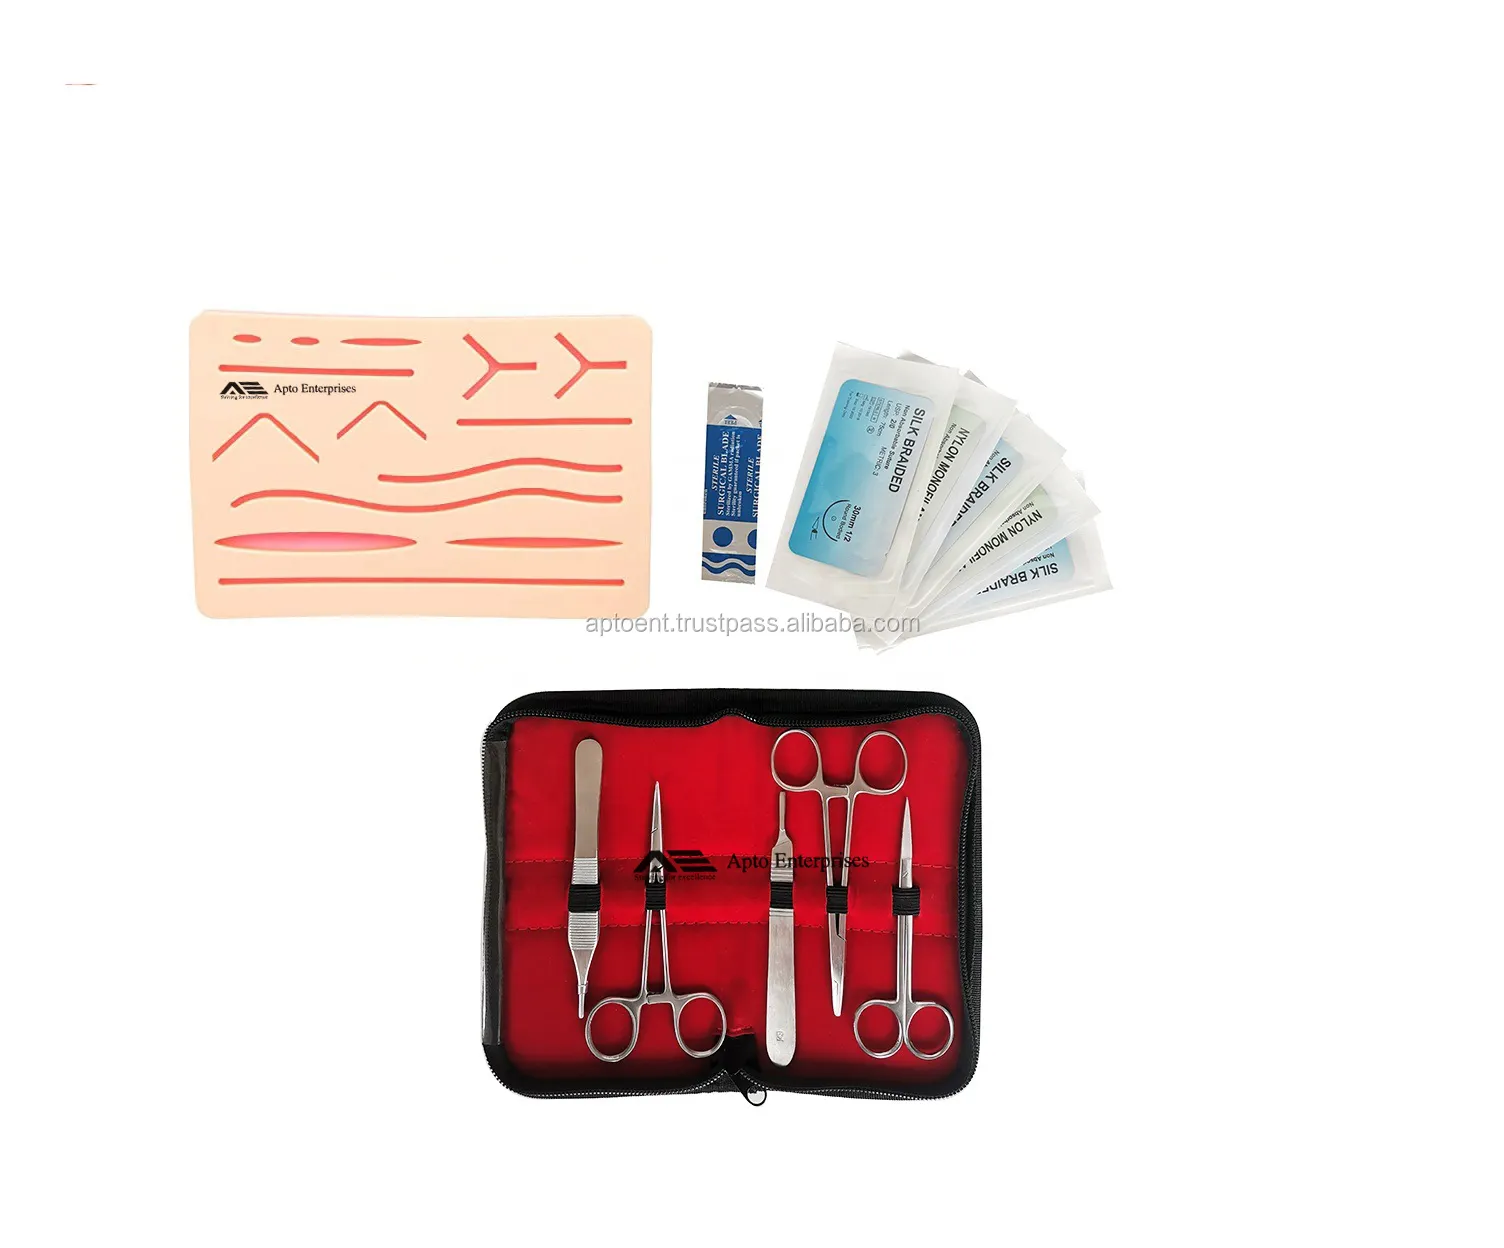 Kit completo de prática de sutura com instrumentos cirúrgicos de precoce precoce de três camadas de sutura para pele da Apto Enterprises